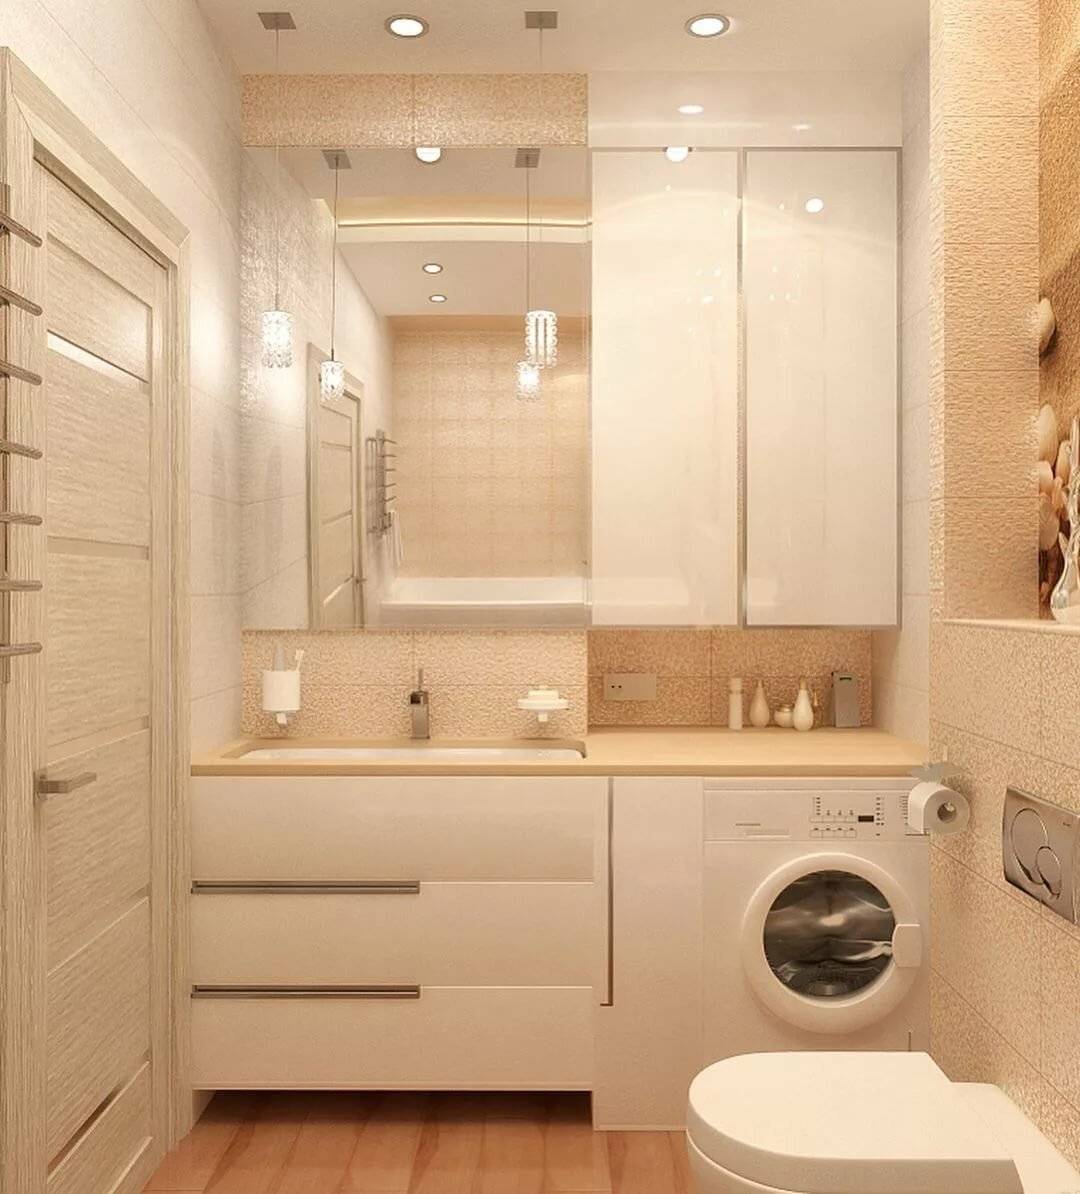 Идеи дизайна для маленькой ванной комнаты в квартире (фото)